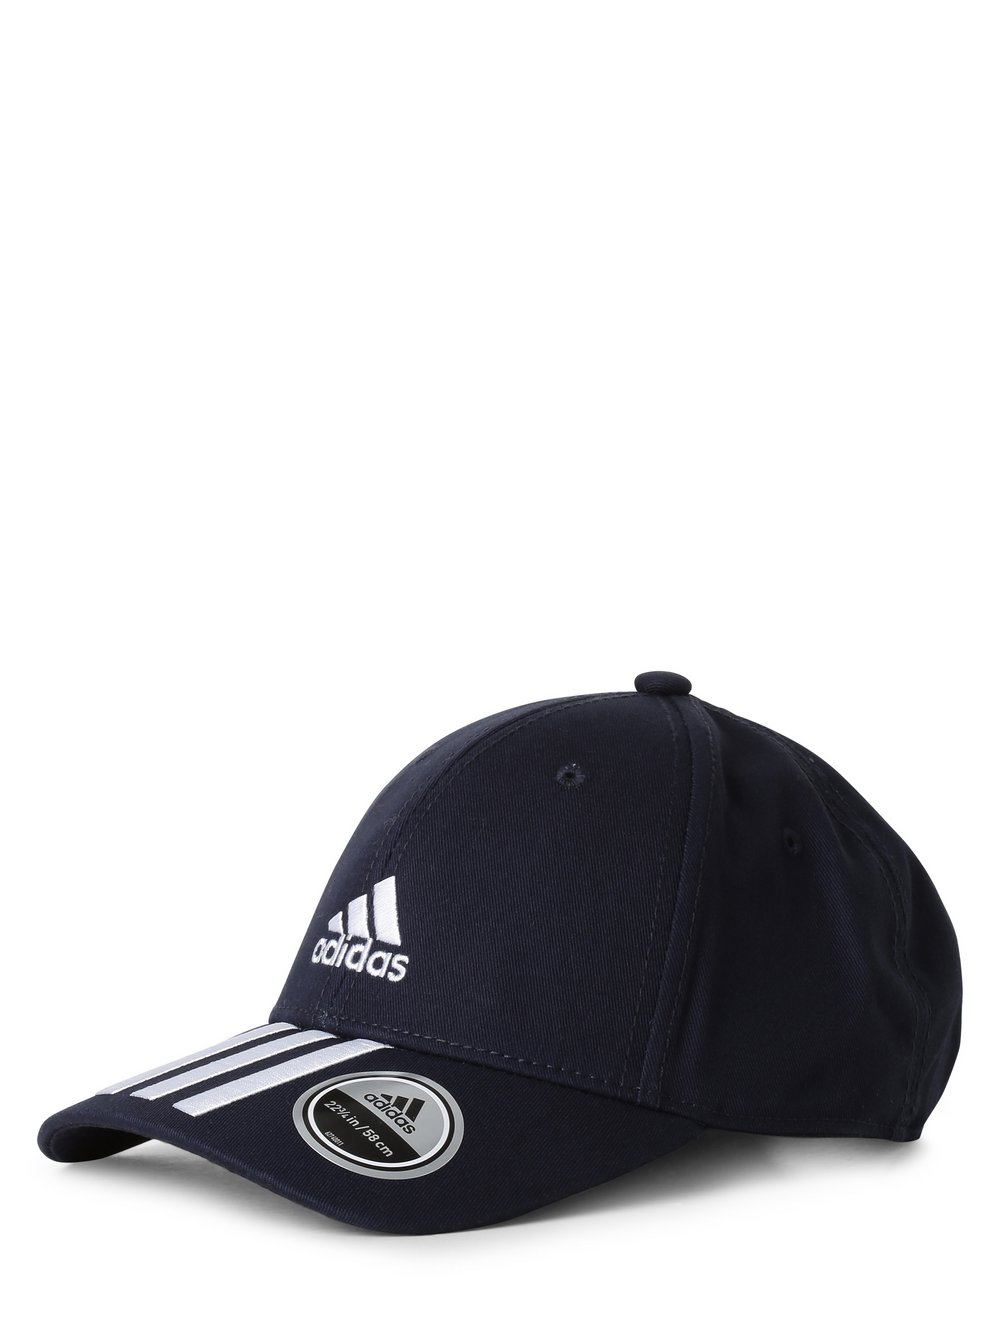 Adidas Performance - Męska czapka z daszkiem, niebieski